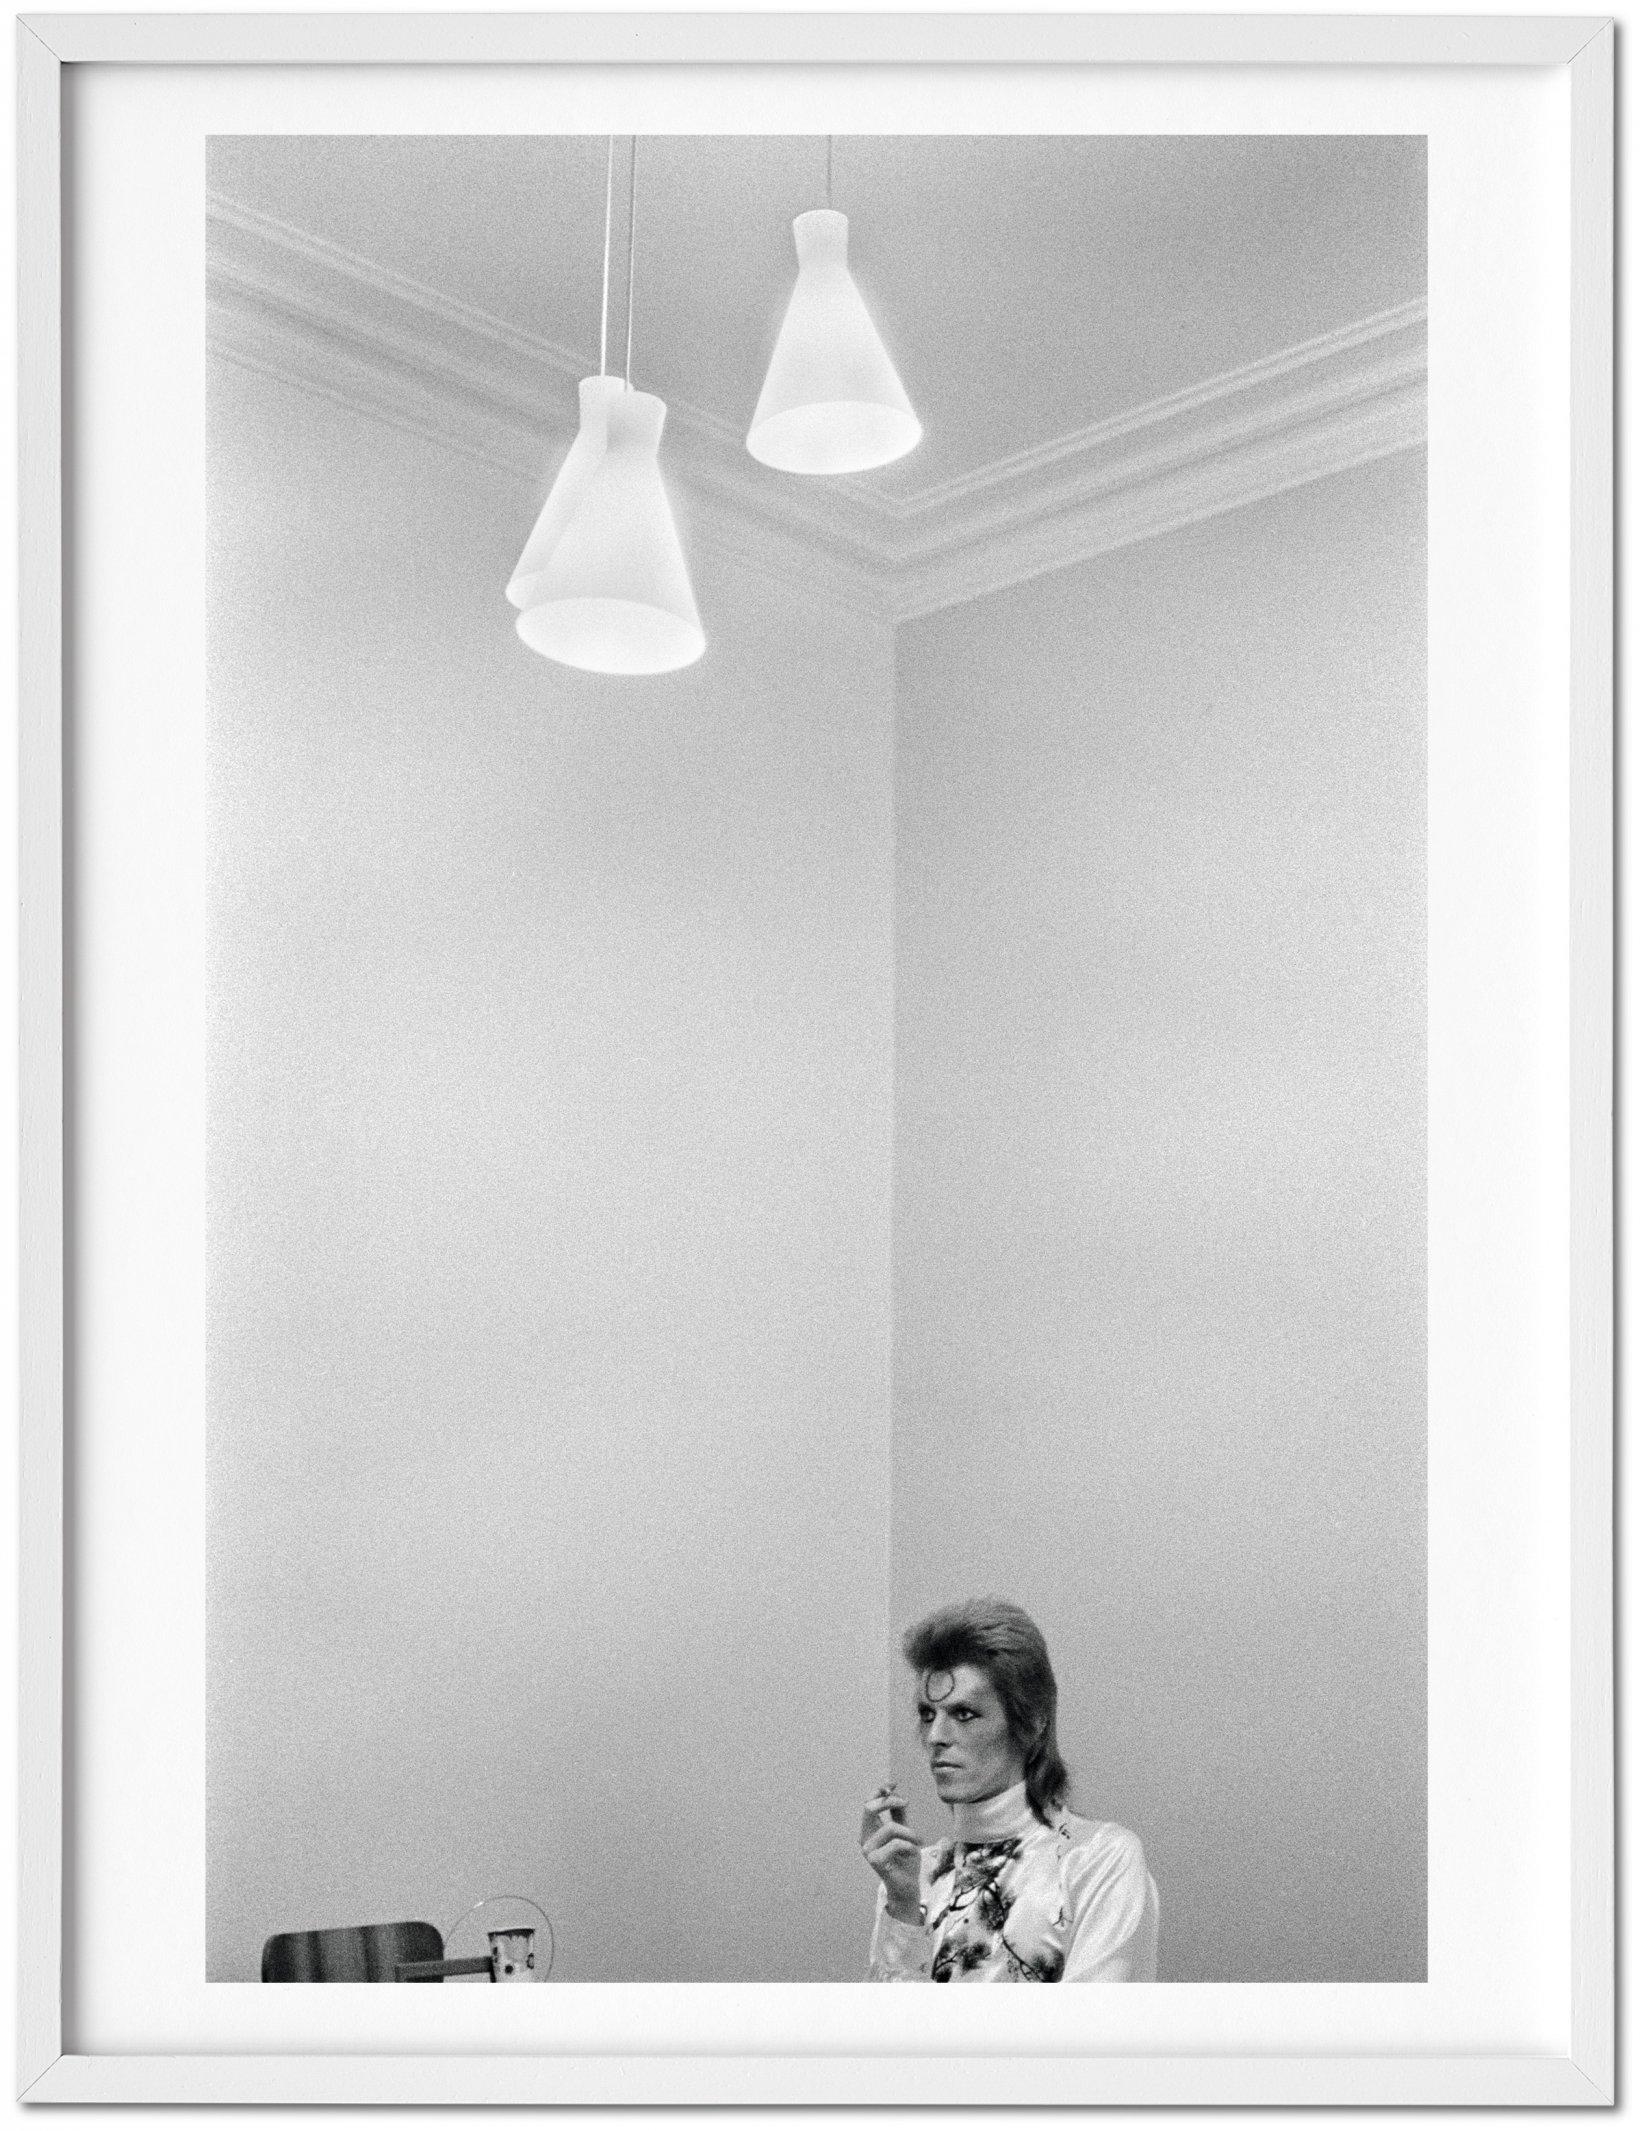 Mick Rock Black and White Photograph – David Bowie – limitierte TASCHEN-Kunstausgabe mit handsigniertem Pigmentdruck – neu